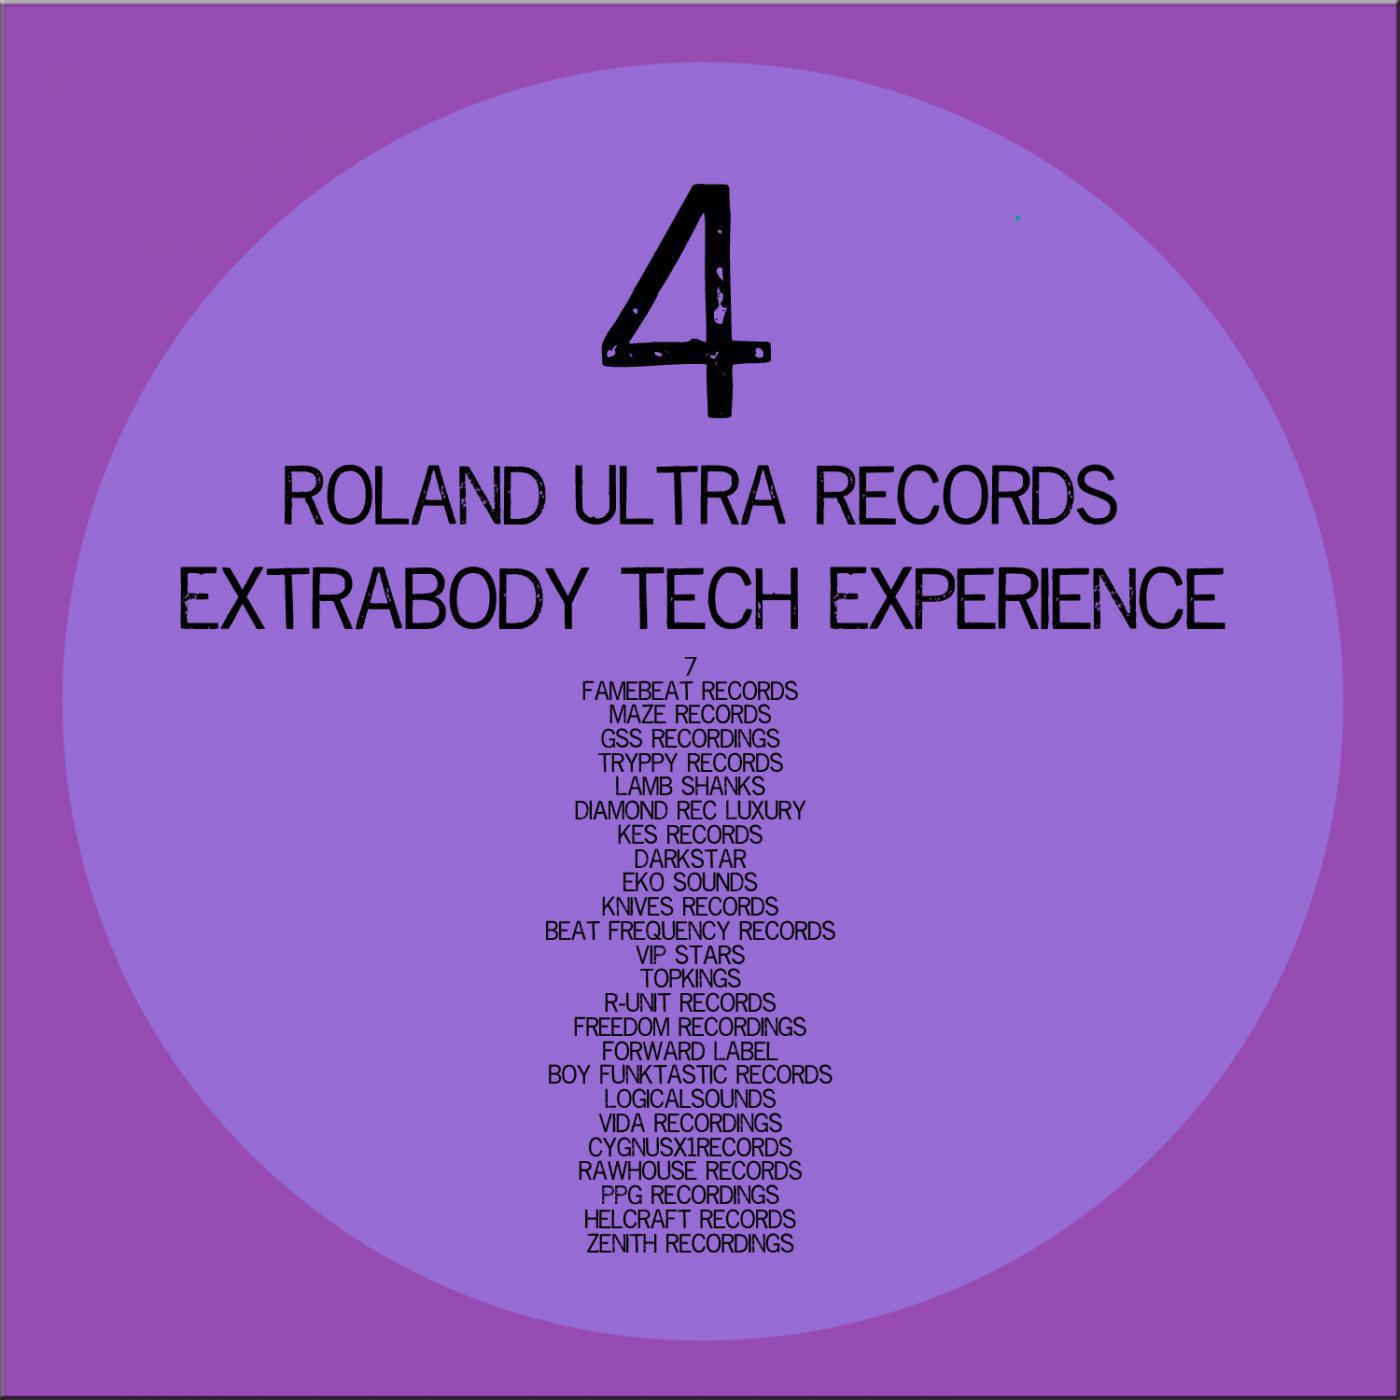 Extrabody Tech Experience 4.0